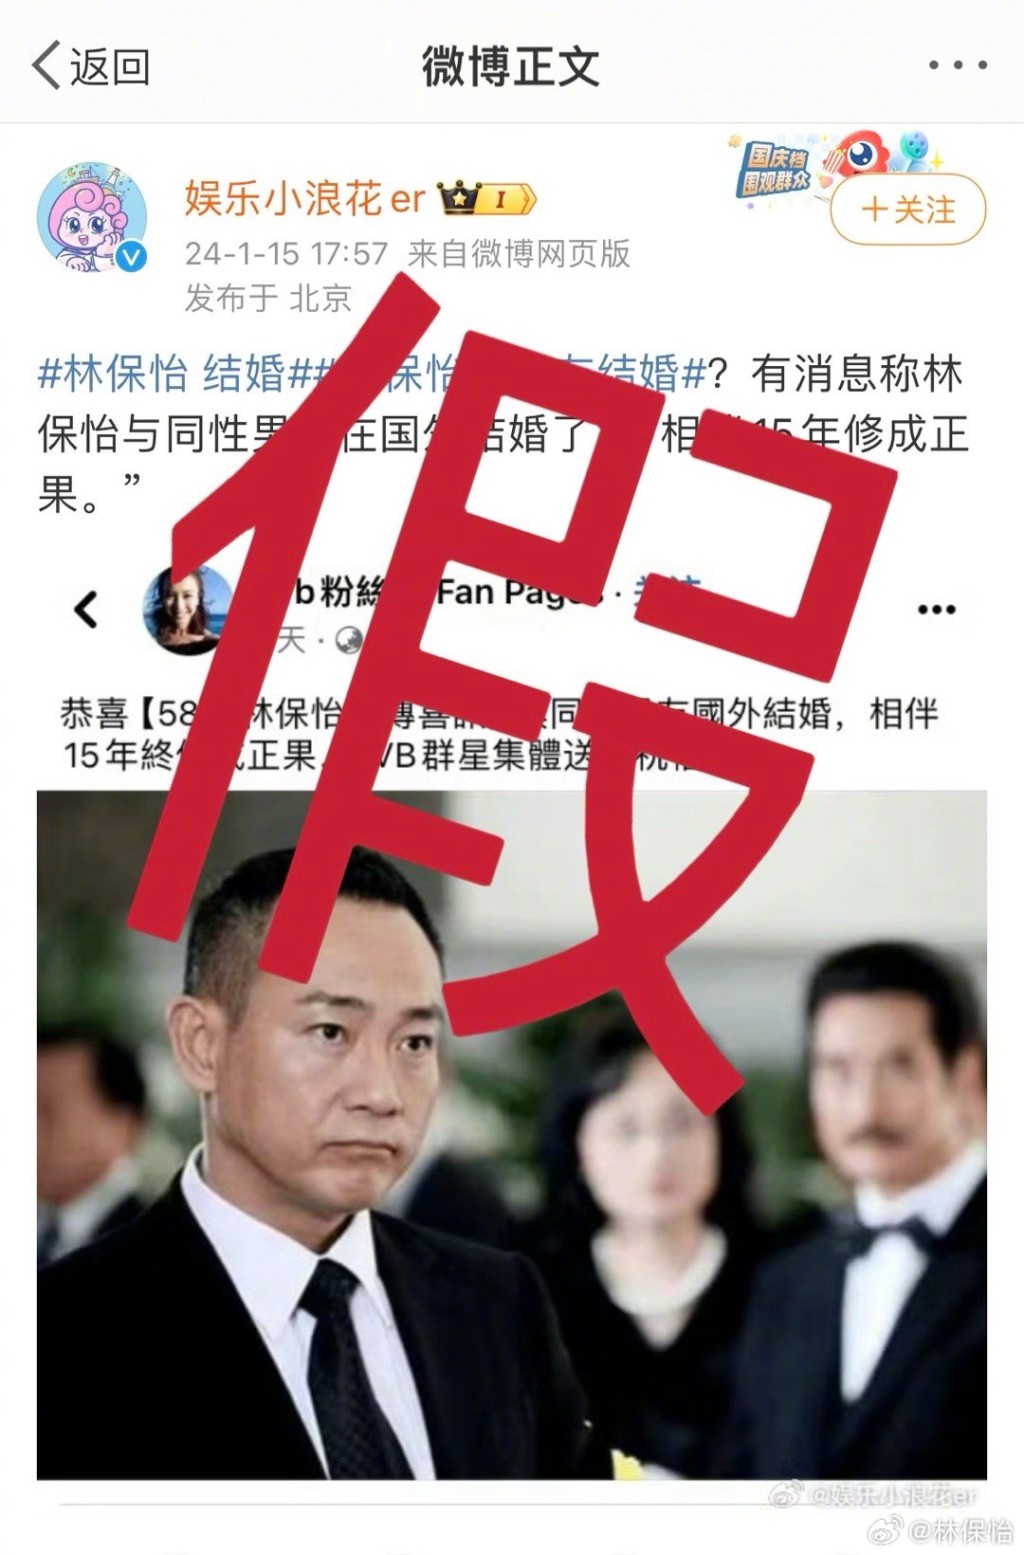 部份假新闻更言之凿凿的写到「TVB群星集体送上祝福」。